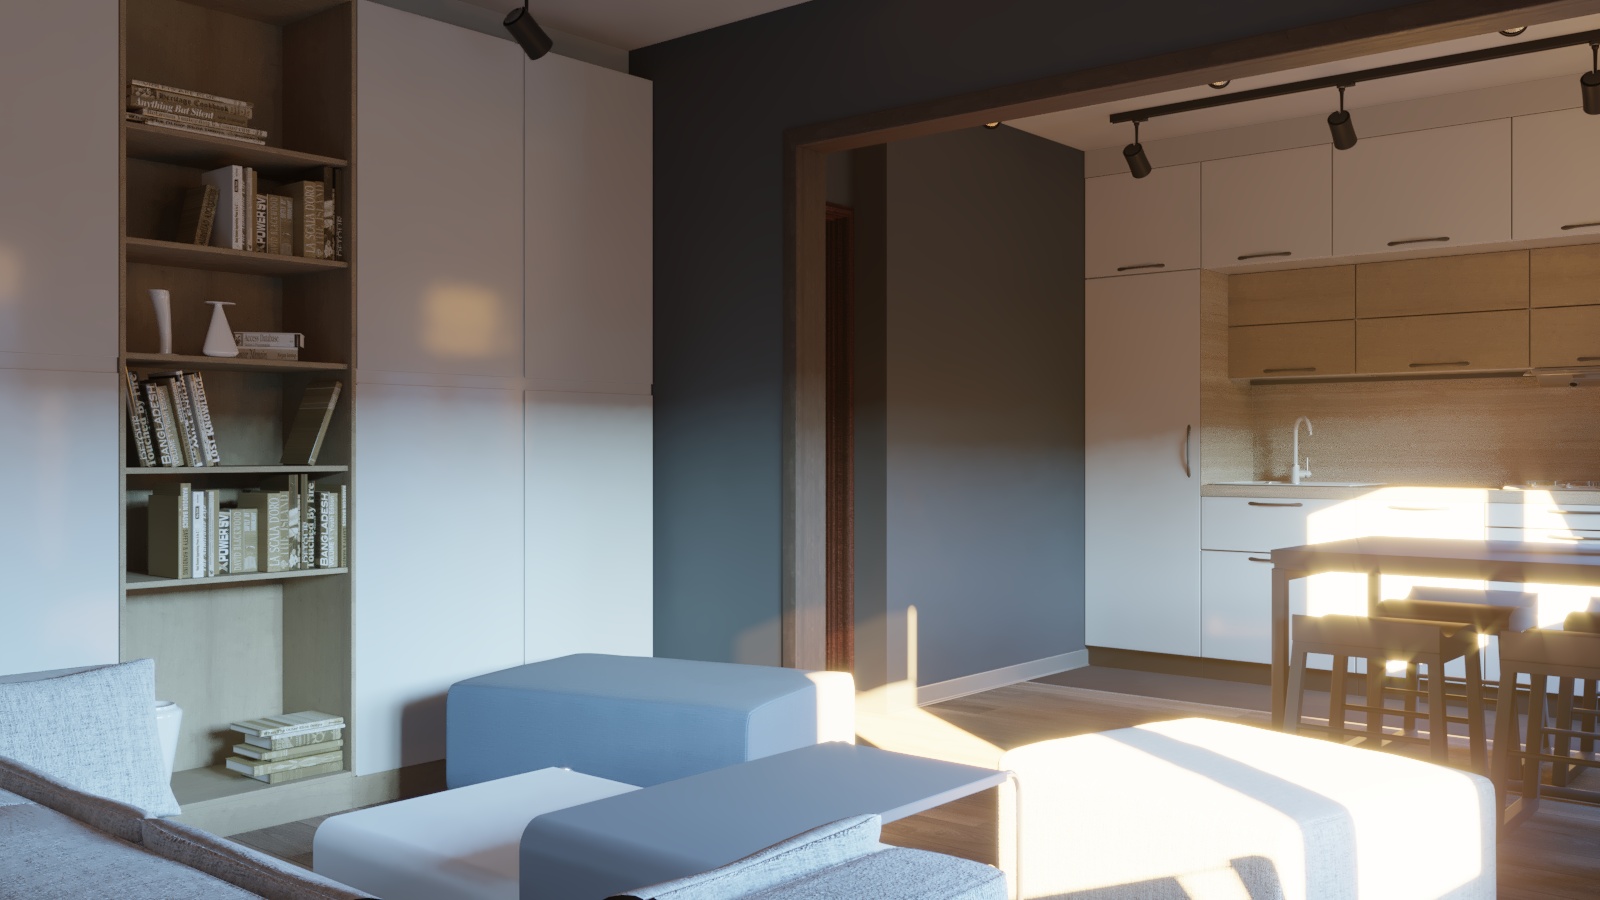 Cozinha com uma pequena sala de estar em 3d max corona render imagem